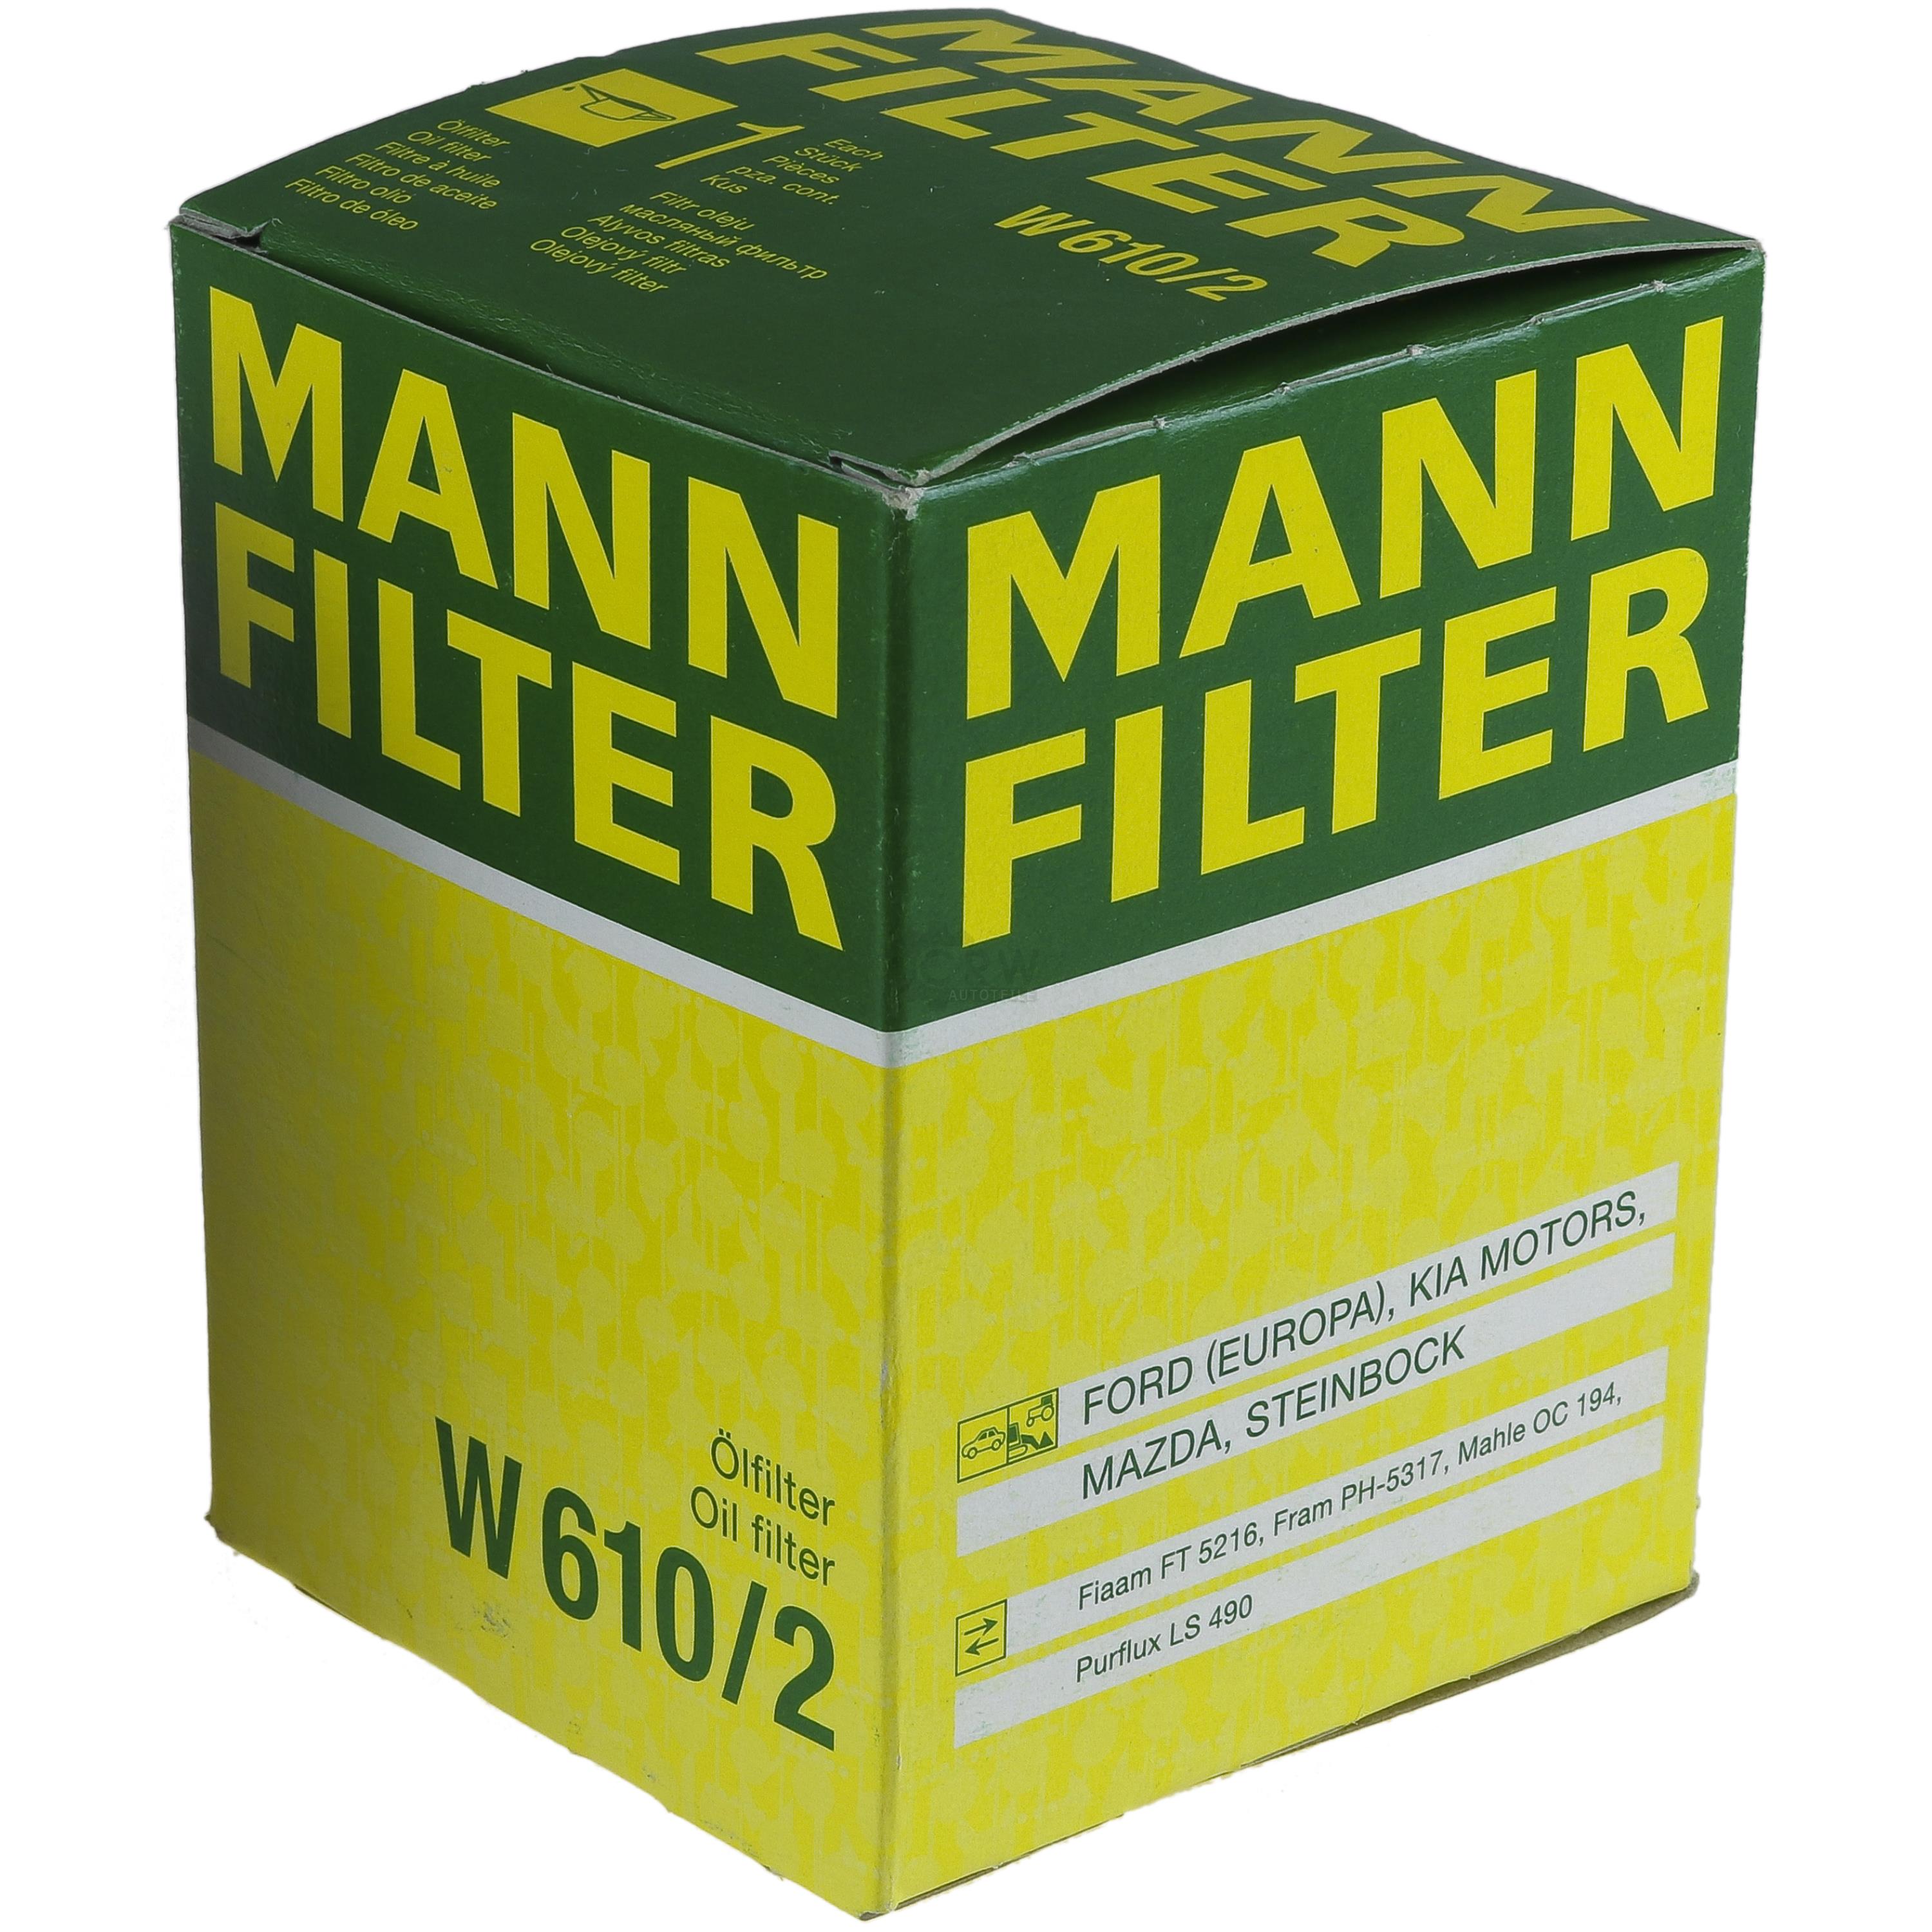 MANN-FILTER Ölfilter W 610/2 Oil Filter